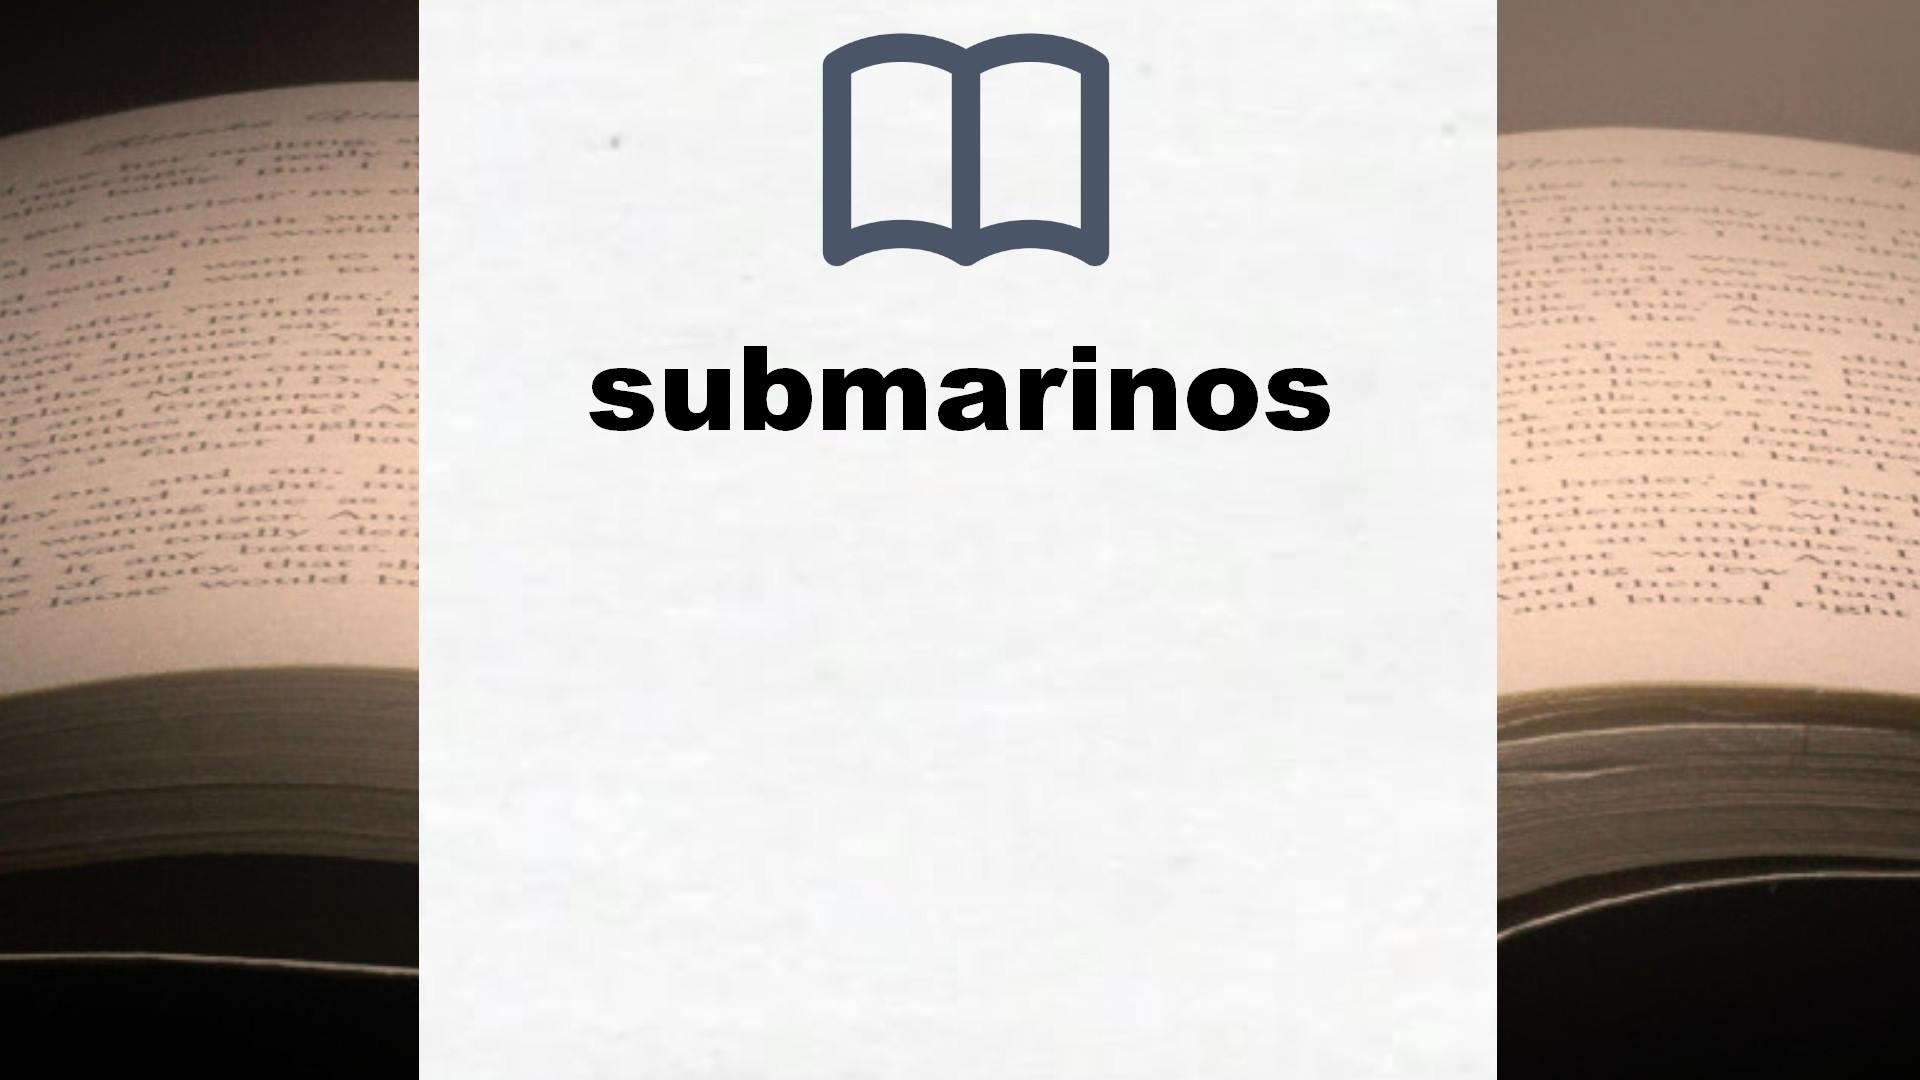 Libros sobre submarinos